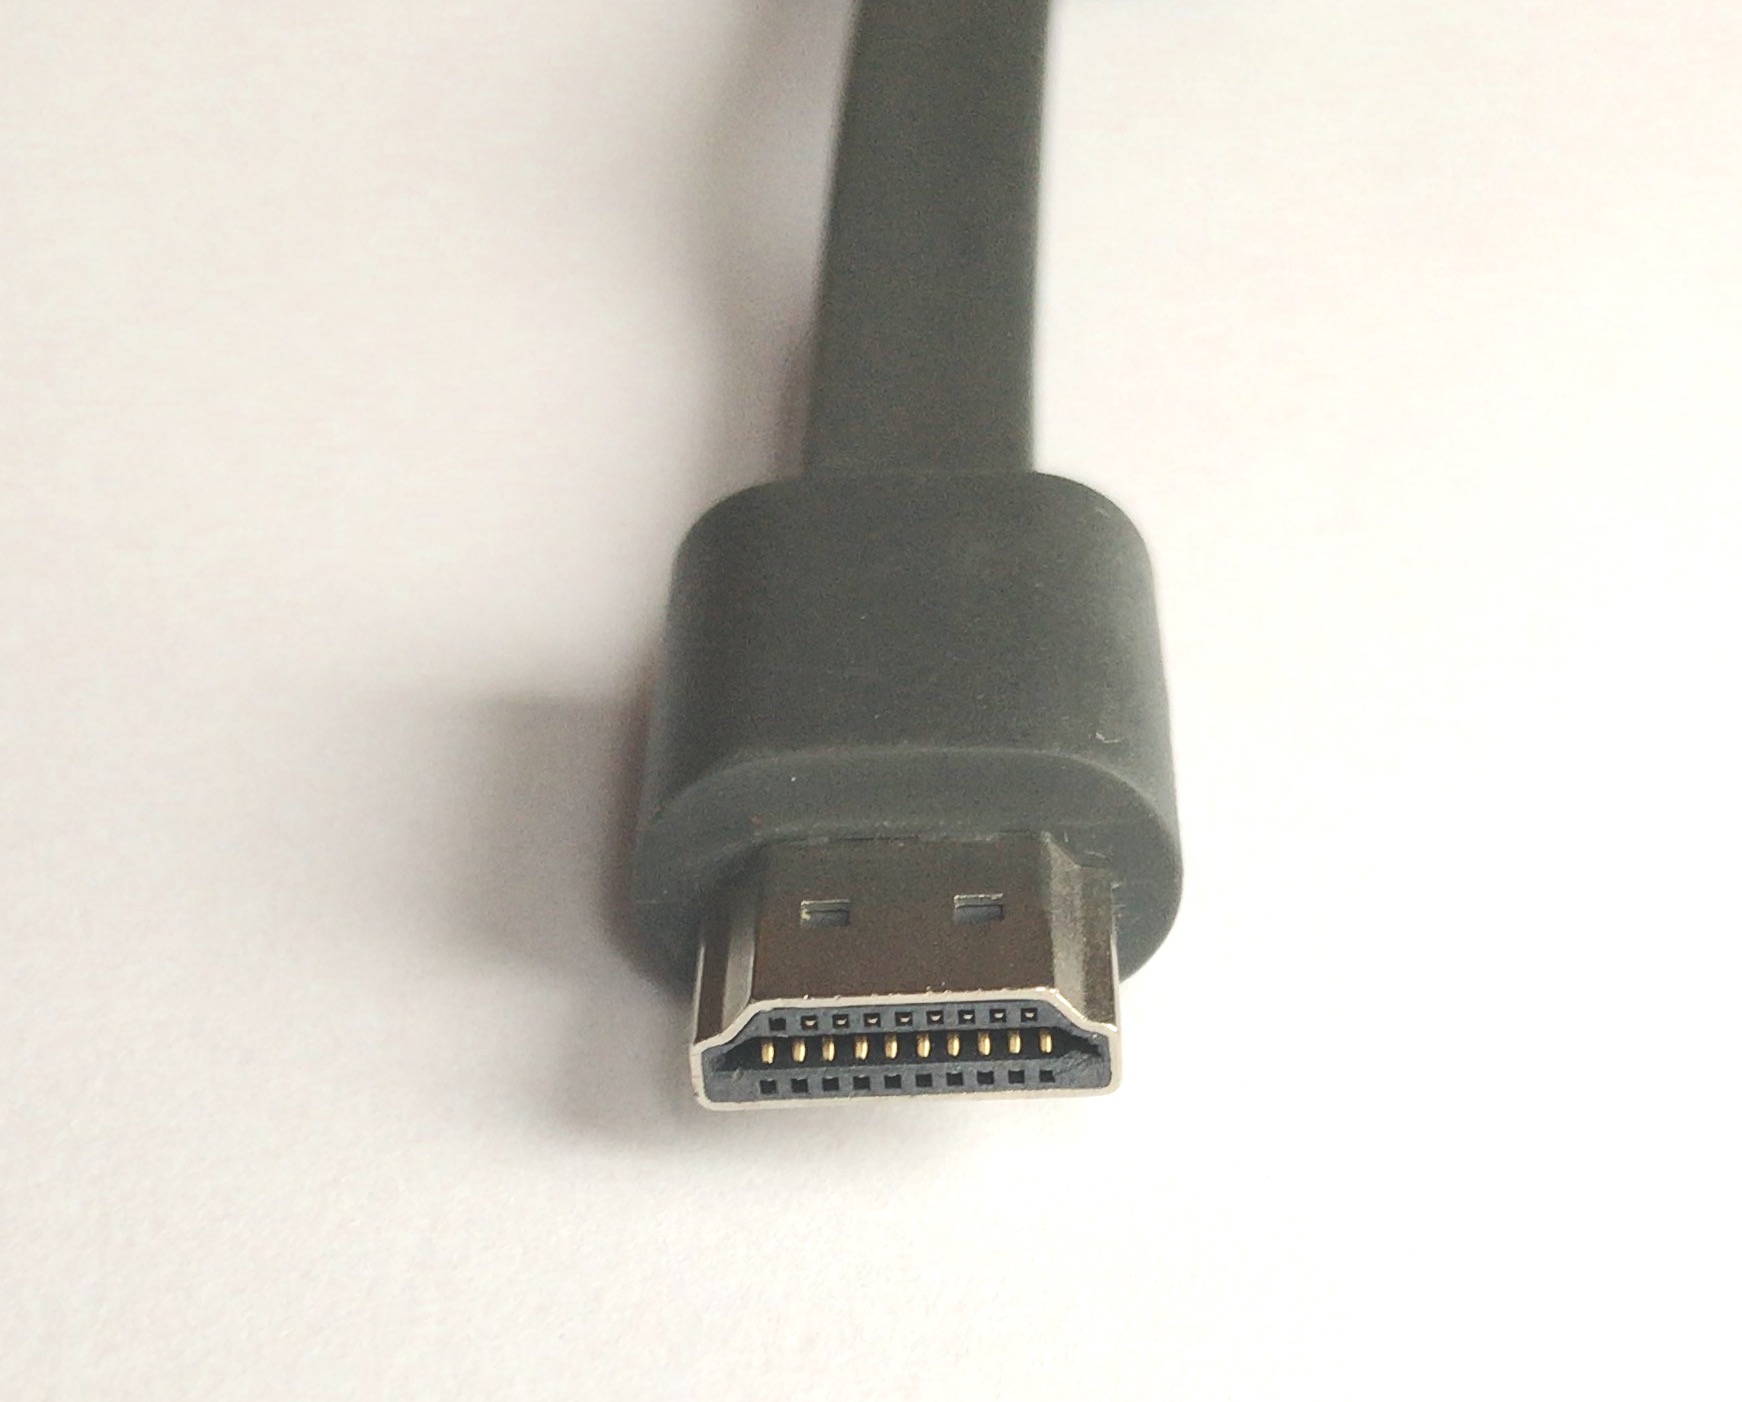 Slik er kontaktene for en HDMI-kabel ut.